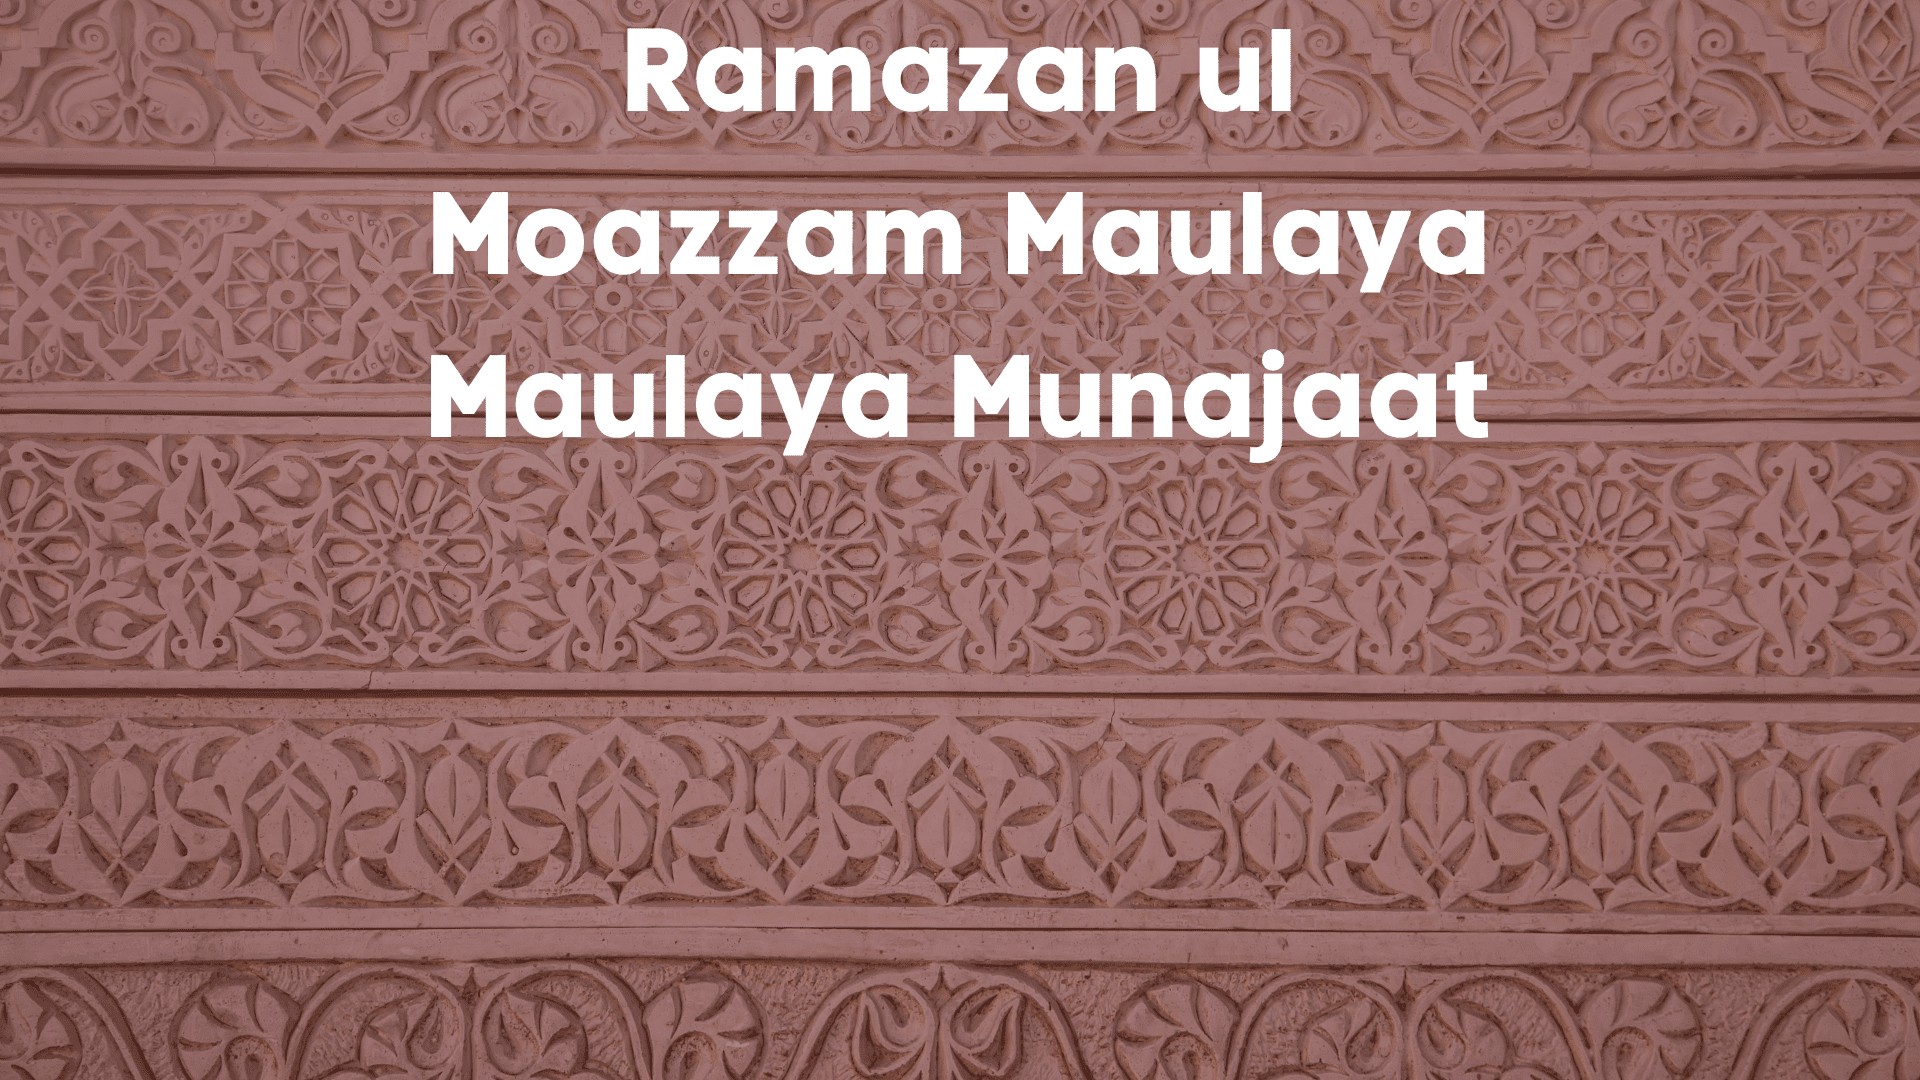 Ramazan ul Moazzam Maulaya Maulaya Munajaat